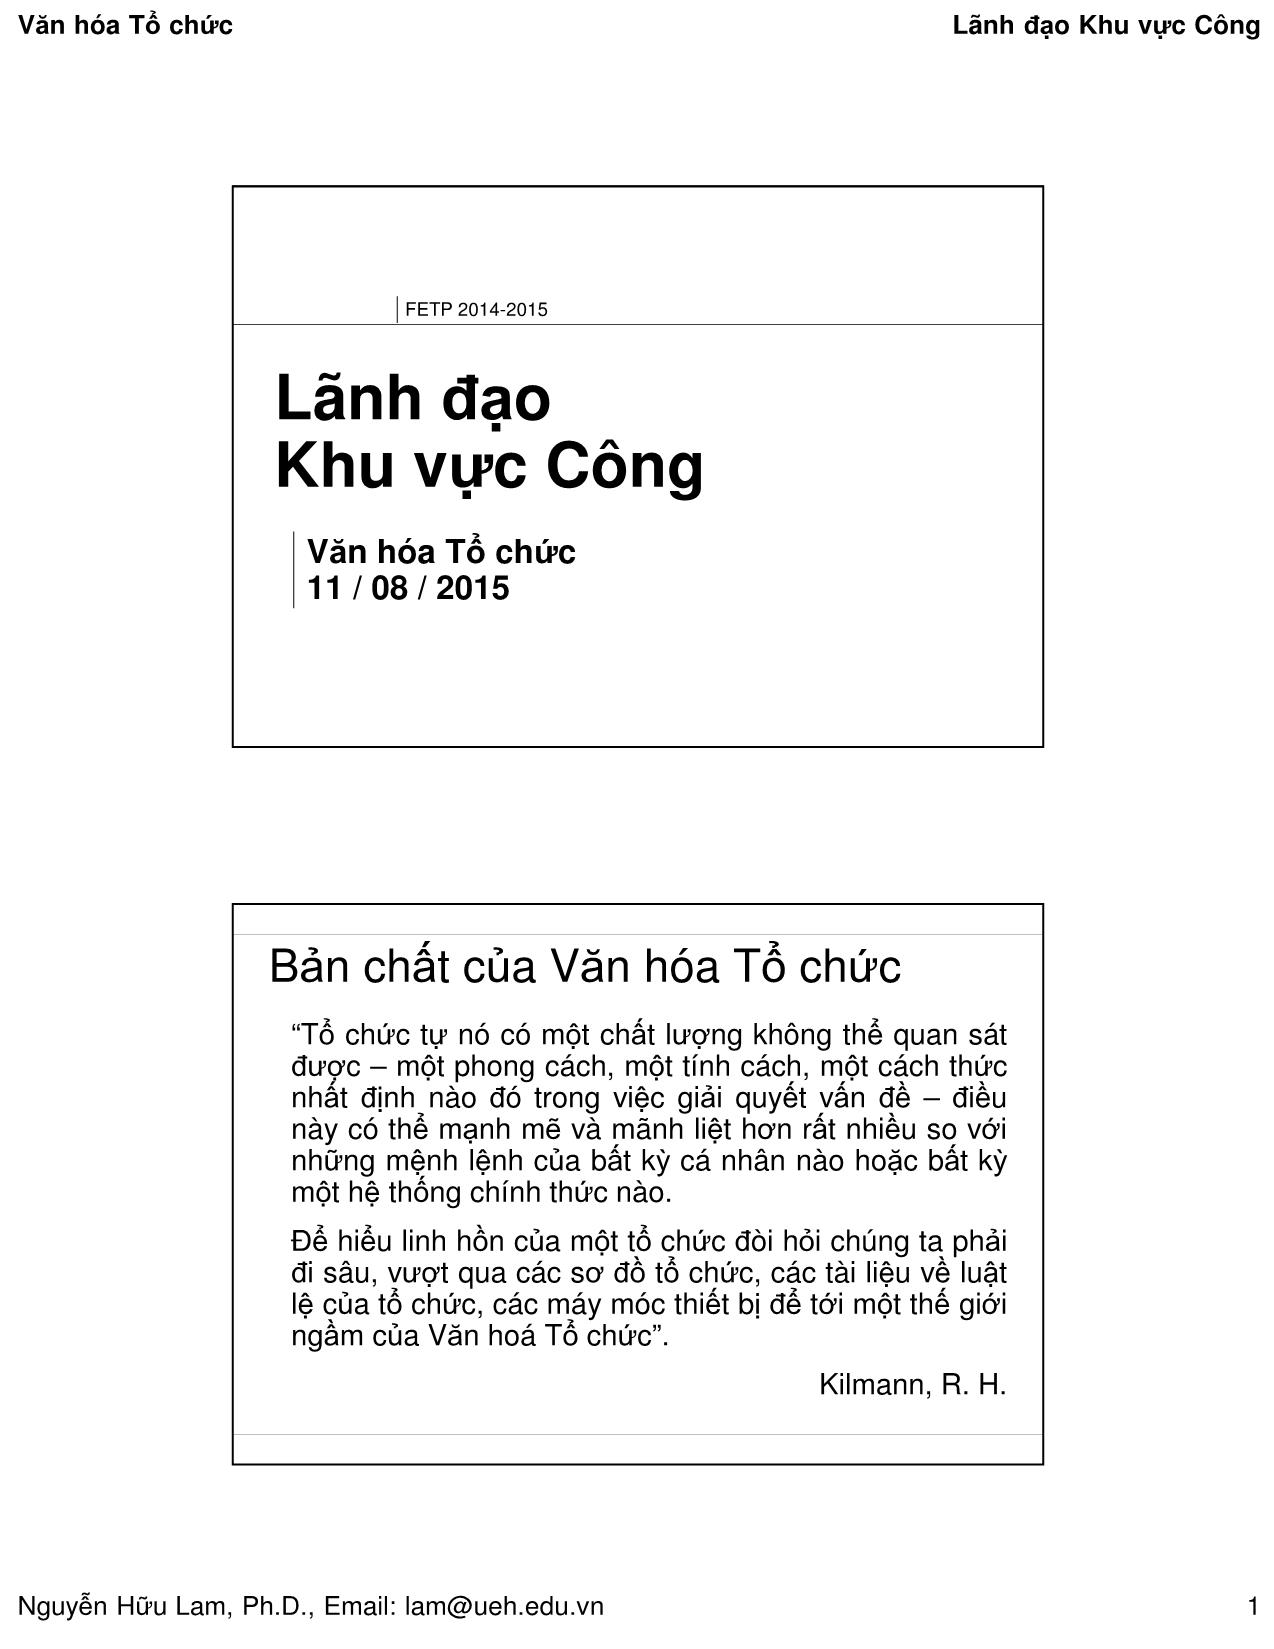 Bài giảng Quản lý công - Văn hóa tổ chức - Nguyễn Hữu Lam trang 1